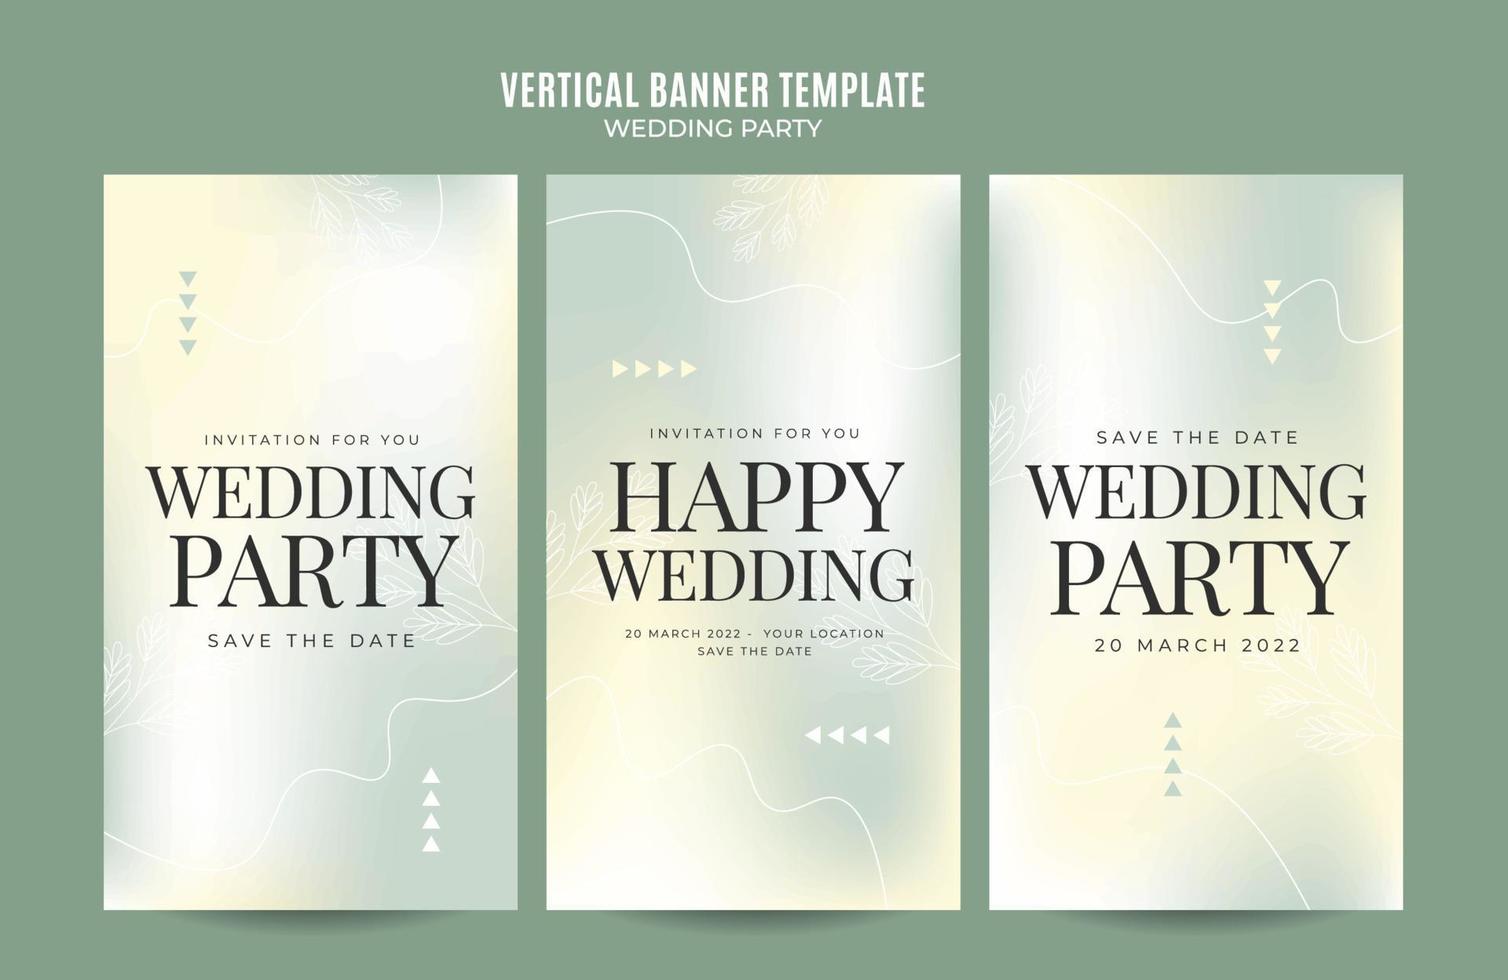 instagram histoire mariage invitation web bannière modèle rétro gradients élégance abstrait flou espace zone vecteur